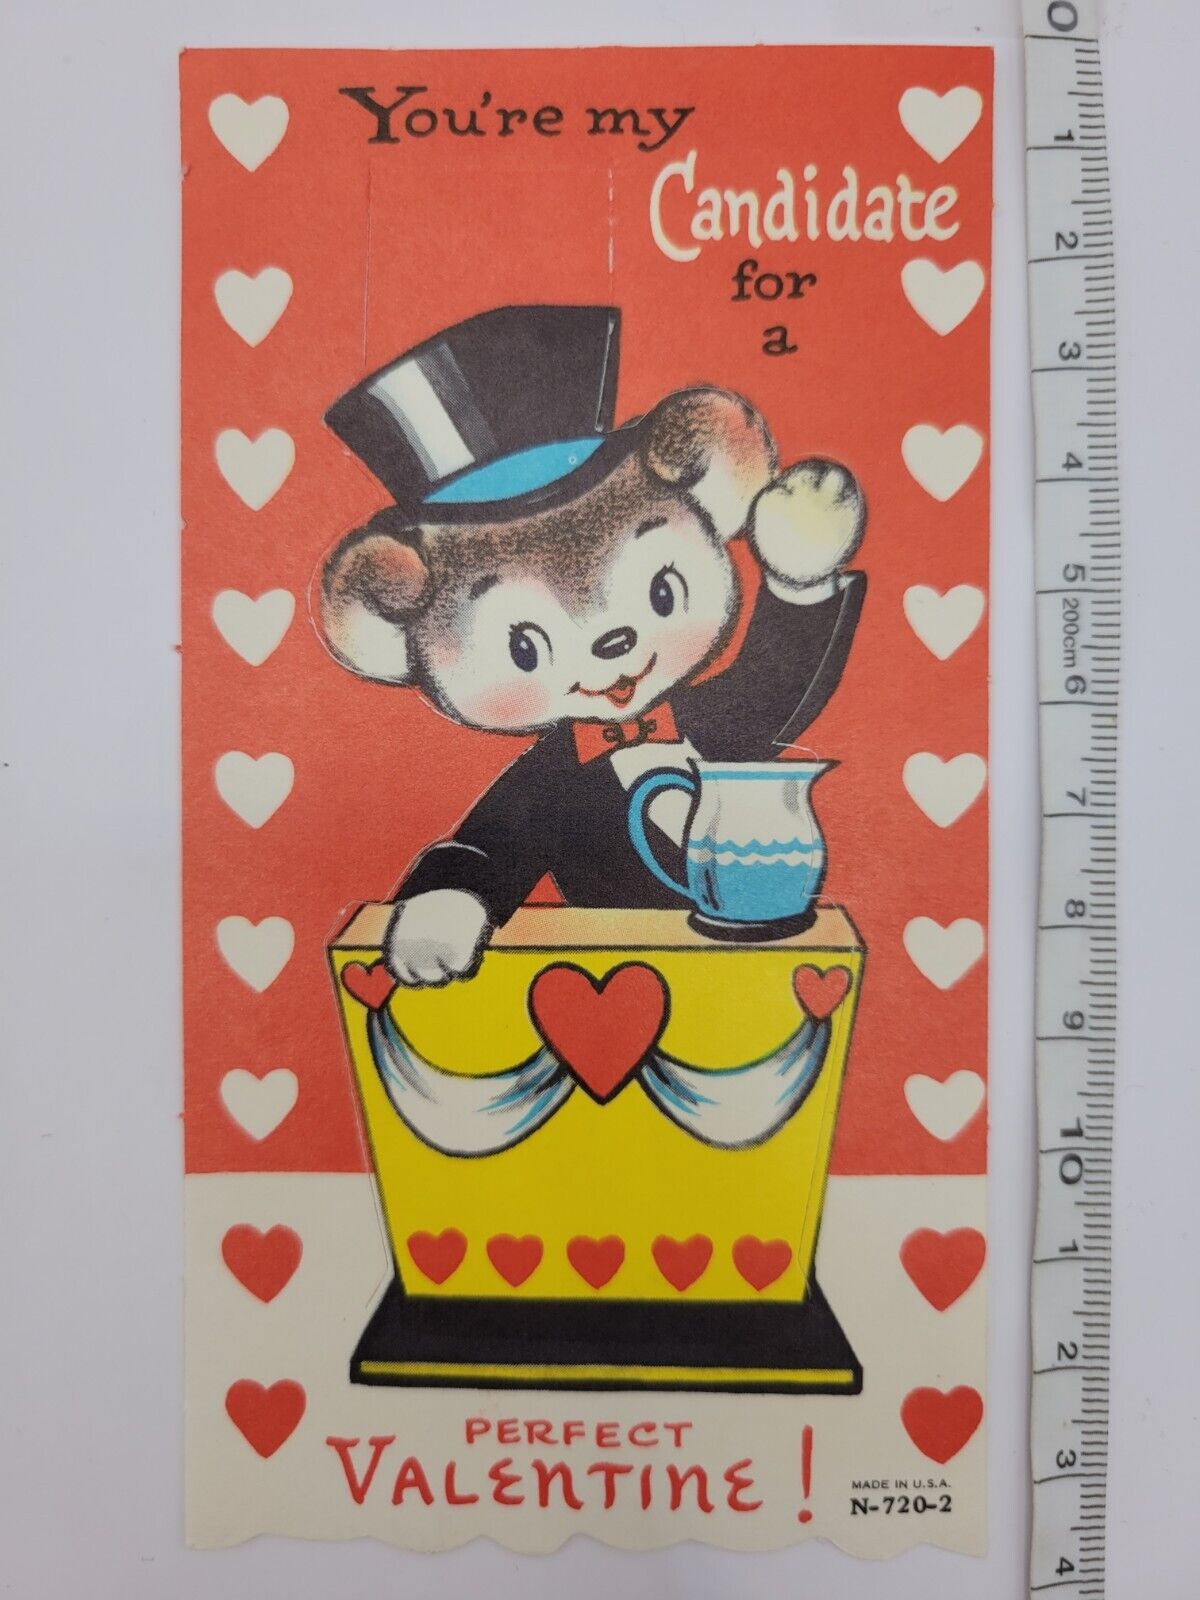 Antique Valentine Teddy Bear Vintage Kitsch Voter Candidate Card USA MCM